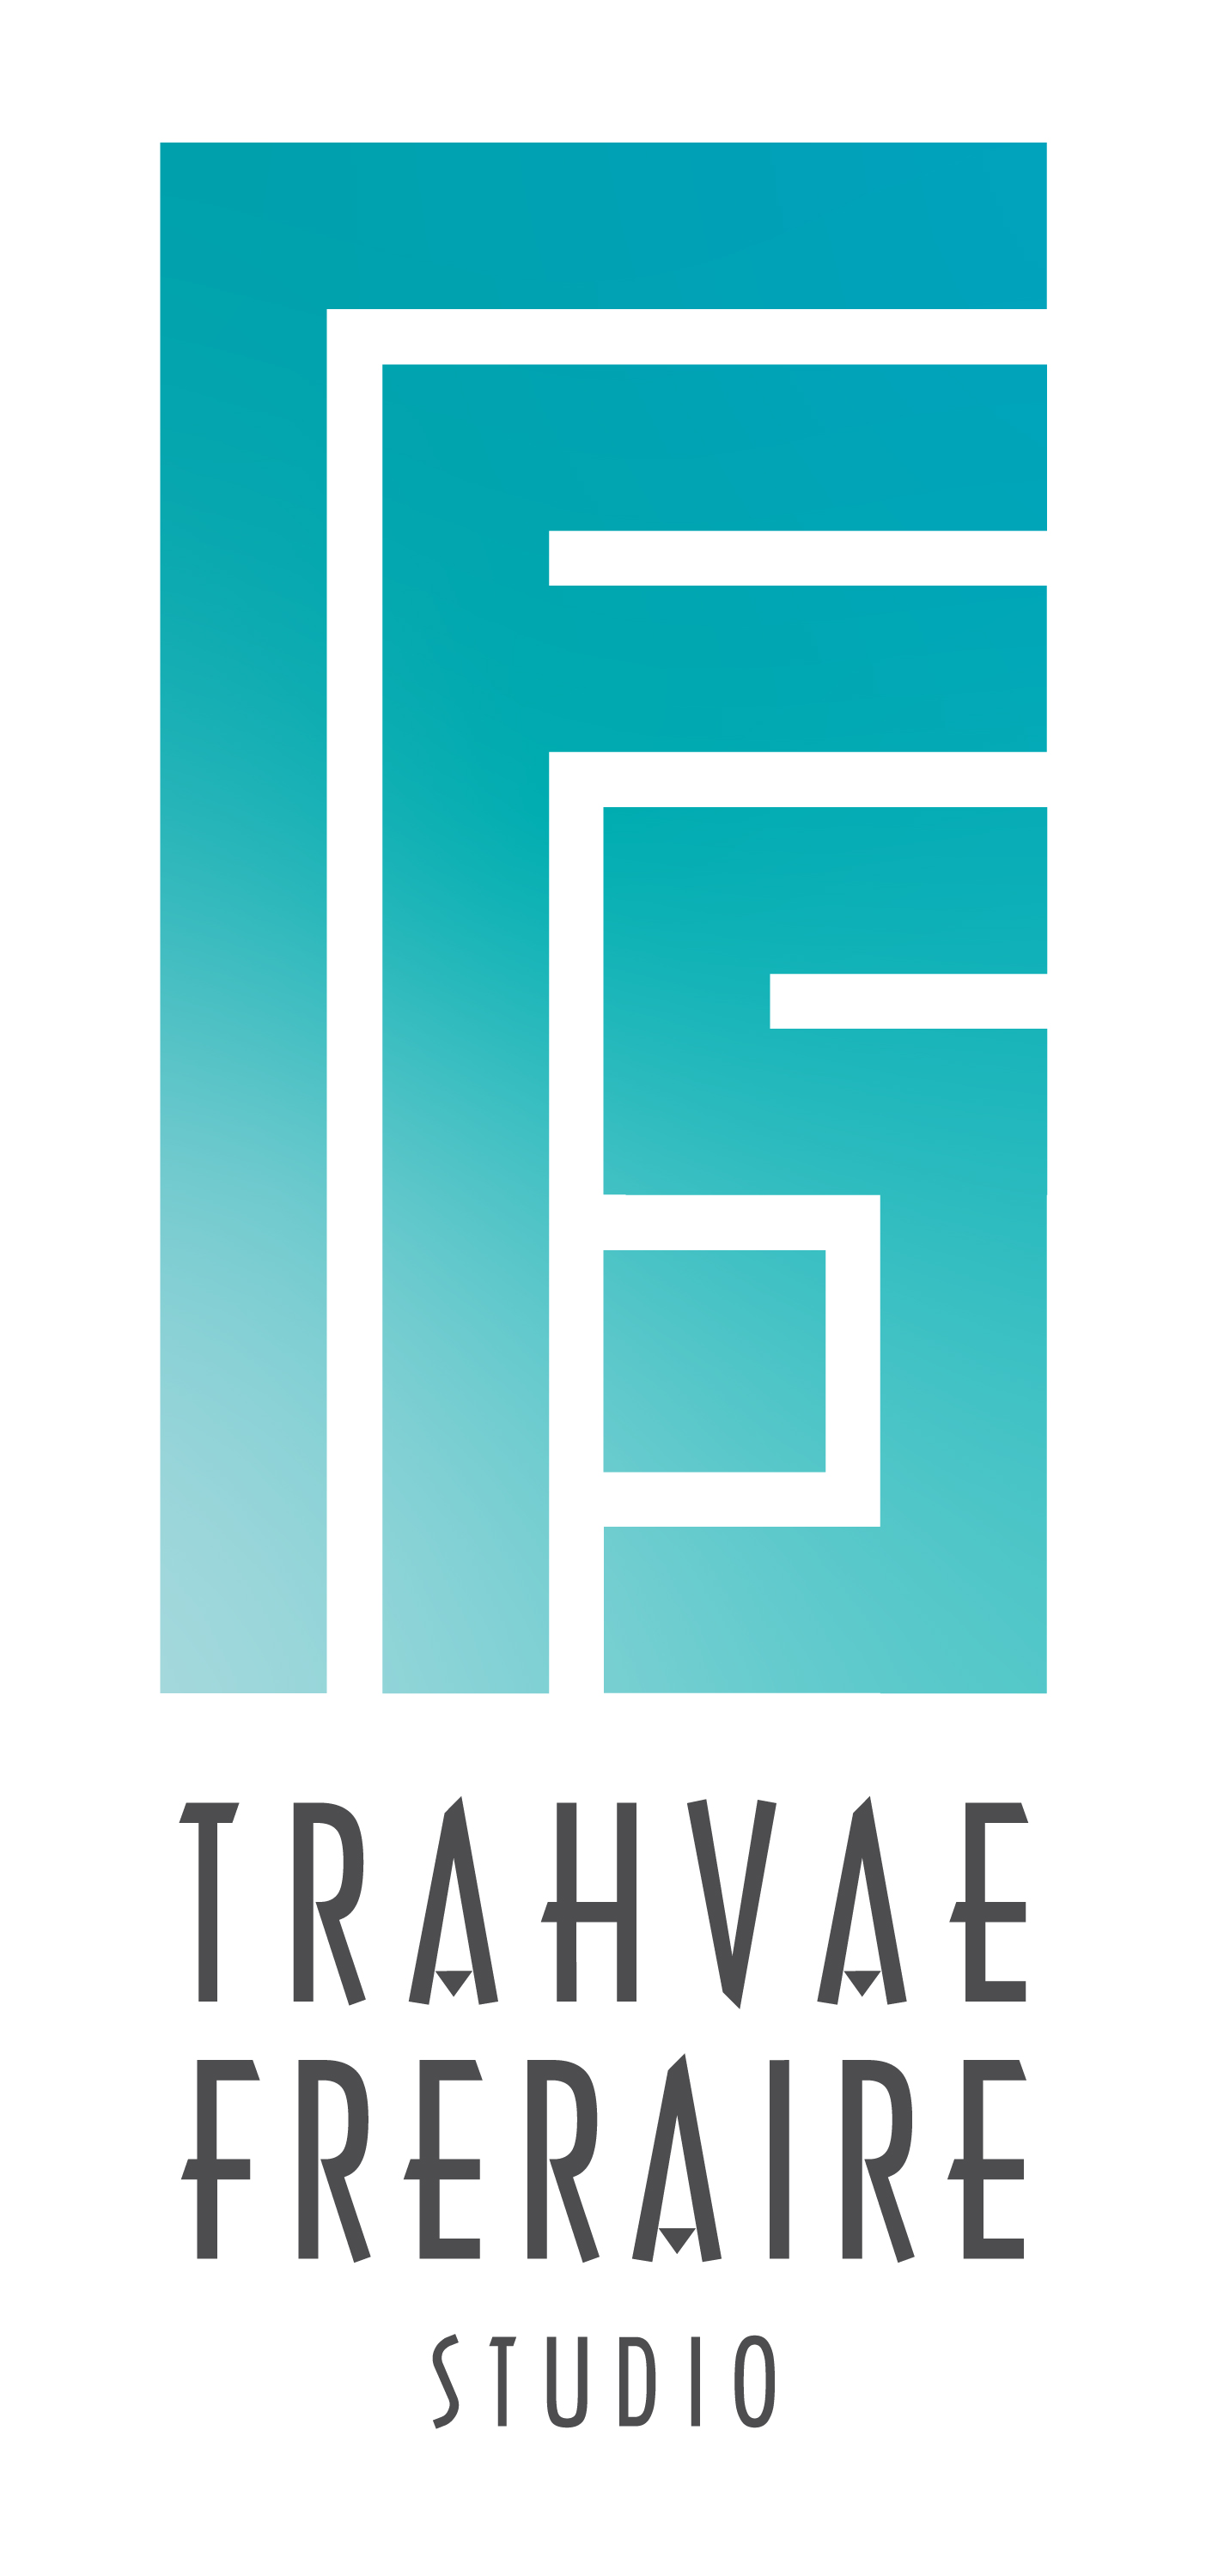 Trahvae Freraire Studio